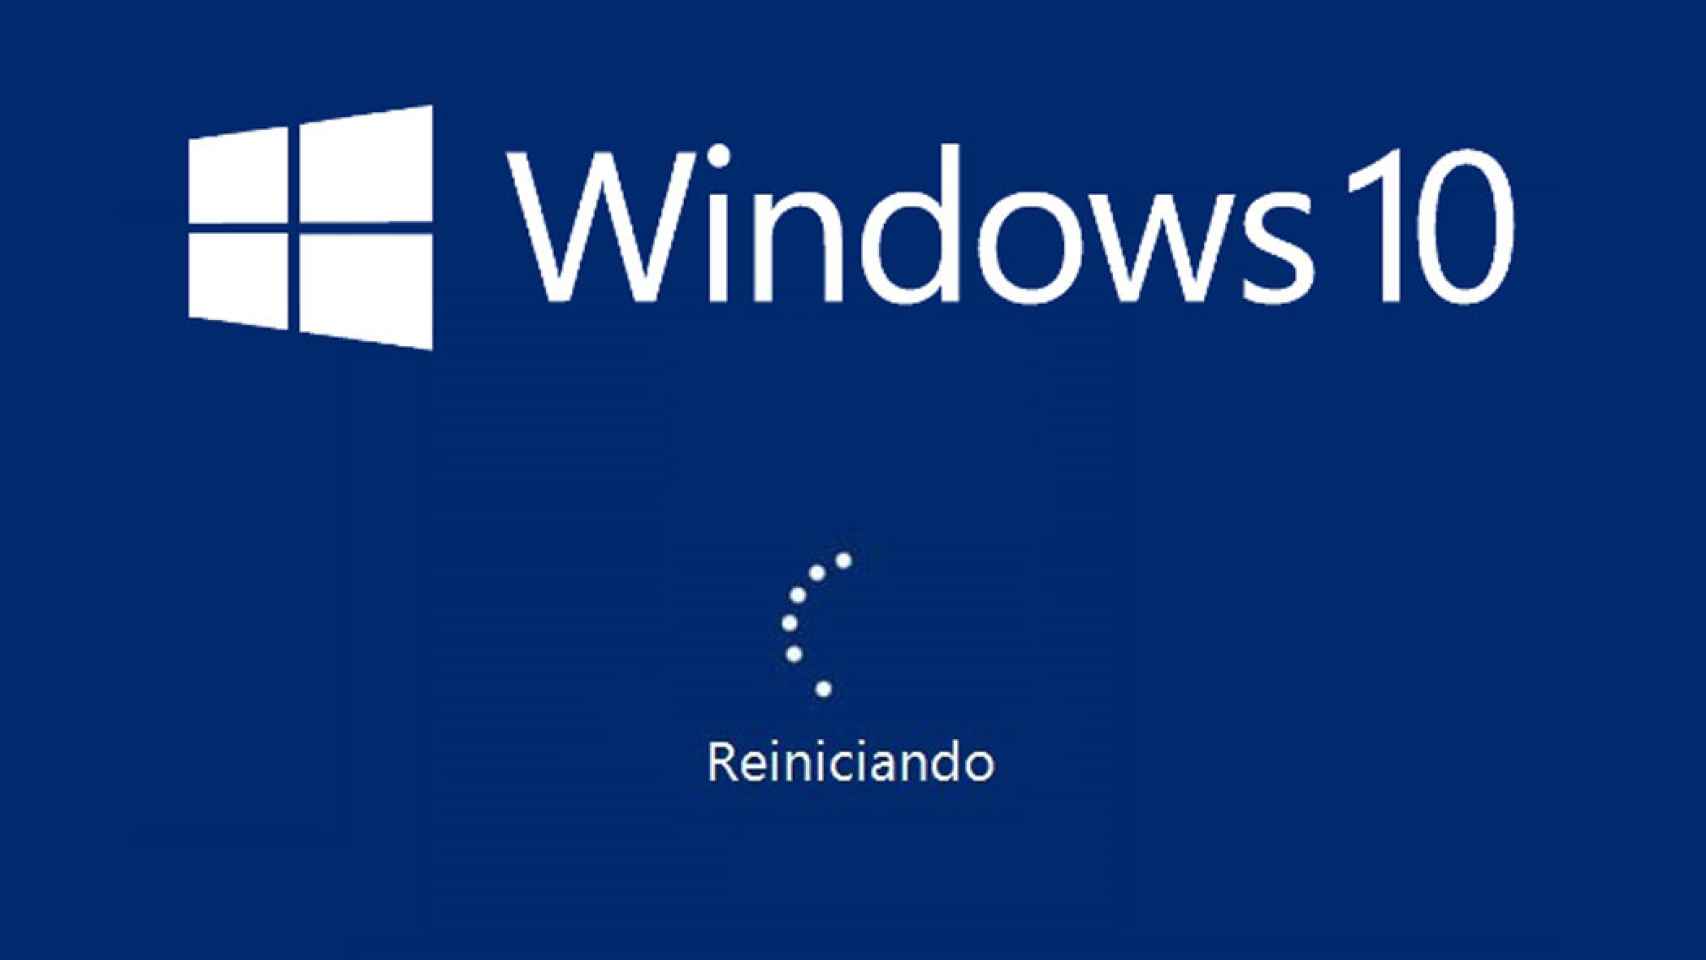 Loading windows 10. Загрузка виндовс 10. Логотип Windows 10. Запуск виндовс. Запуск Windows 10.